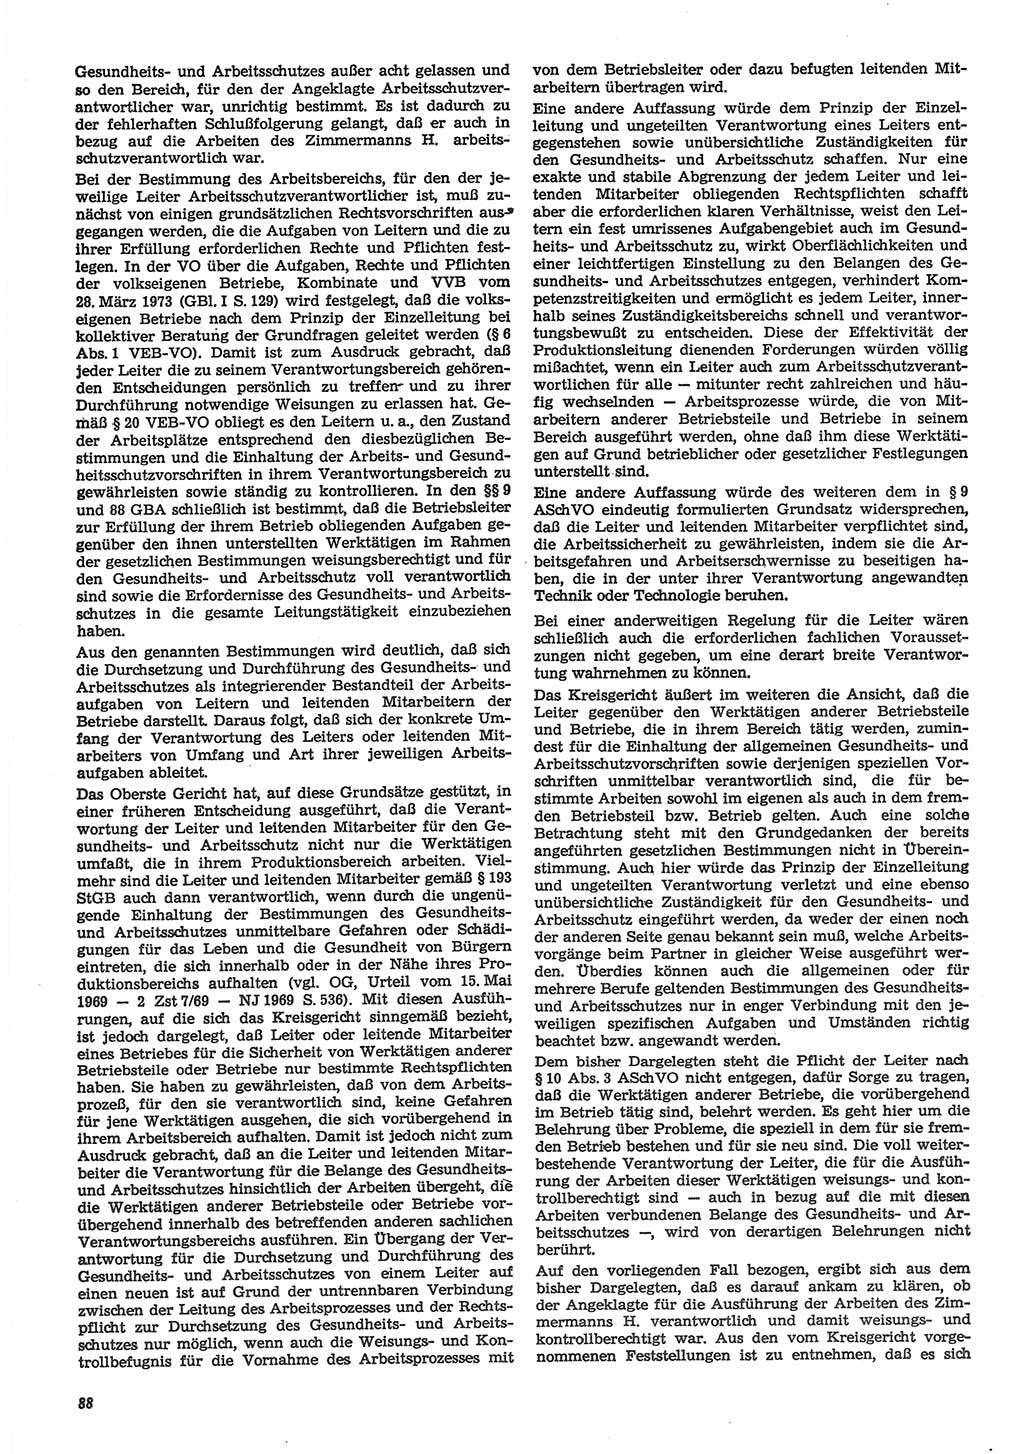 Neue Justiz (NJ), Zeitschrift für Recht und Rechtswissenschaft-Zeitschrift, sozialistisches Recht und Gesetzlichkeit, 31. Jahrgang 1977, Seite 88 (NJ DDR 1977, S. 88)